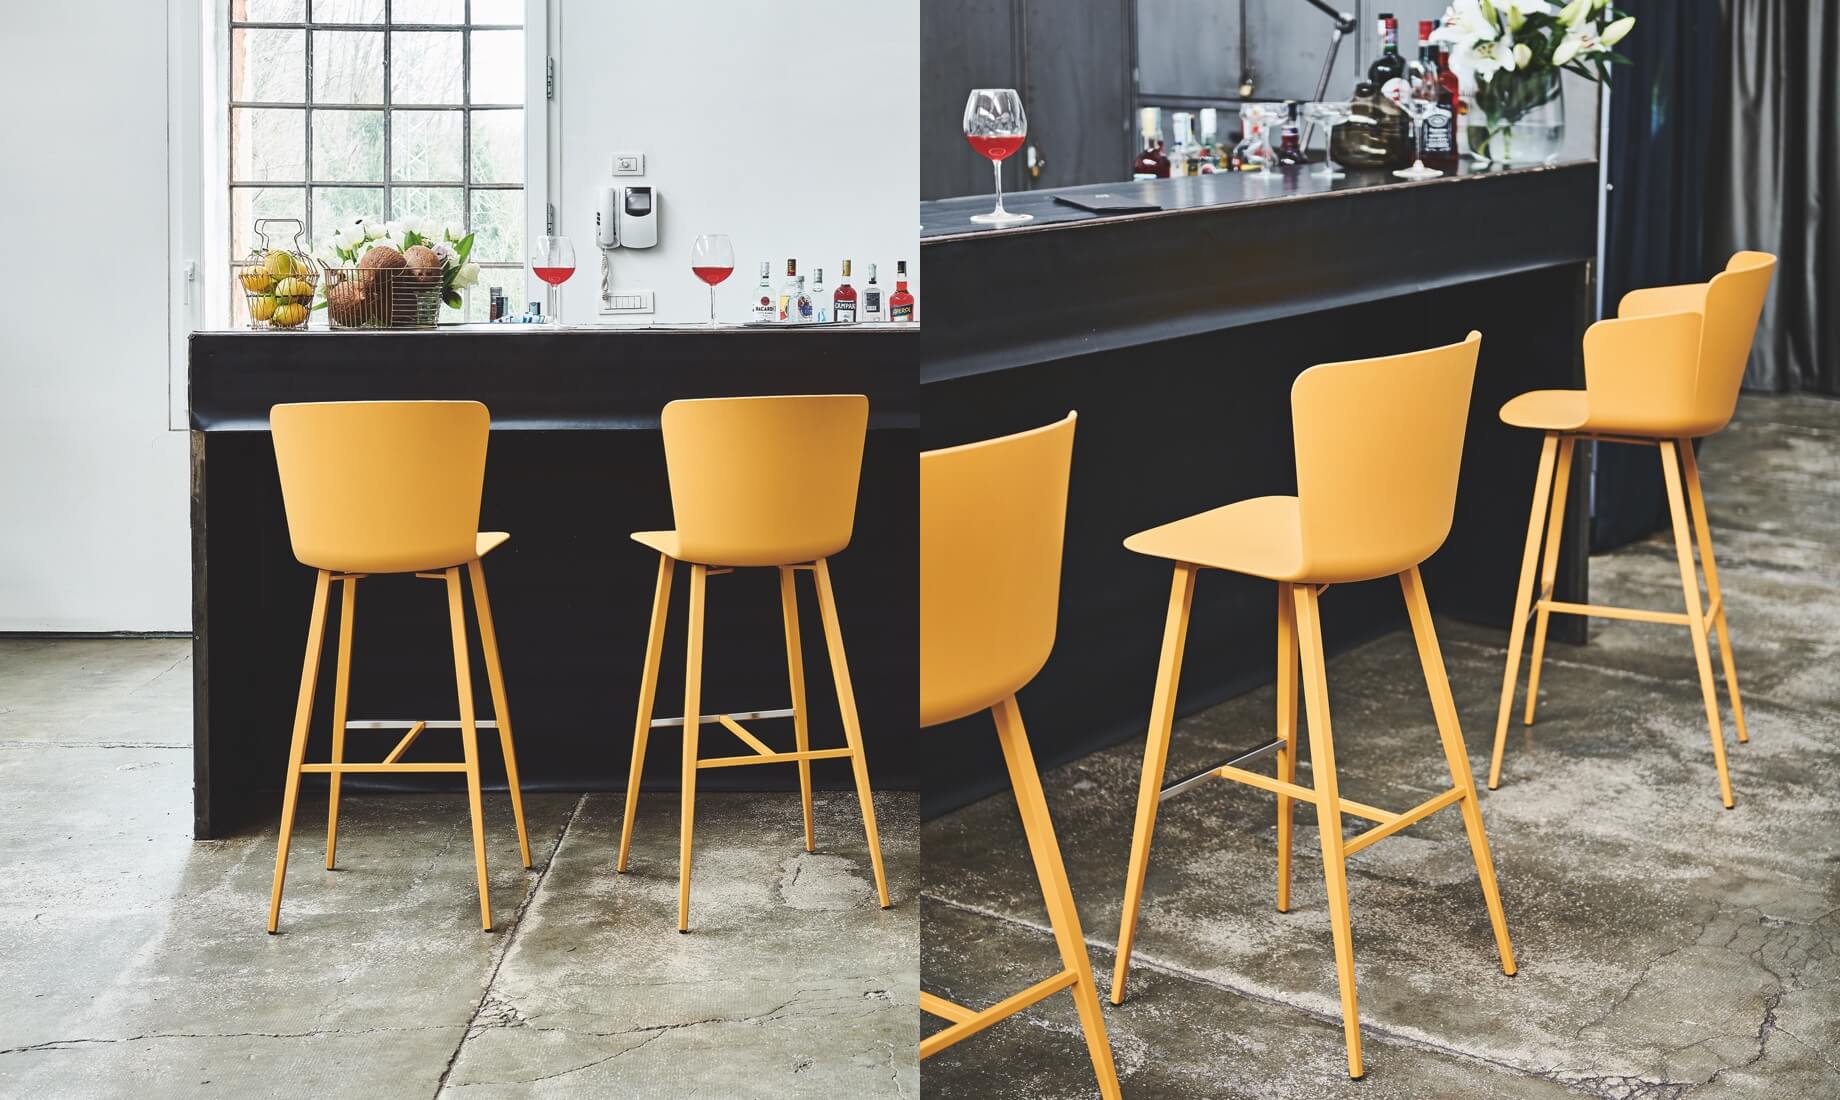 Calla stool, design Fabrizio Batoni.